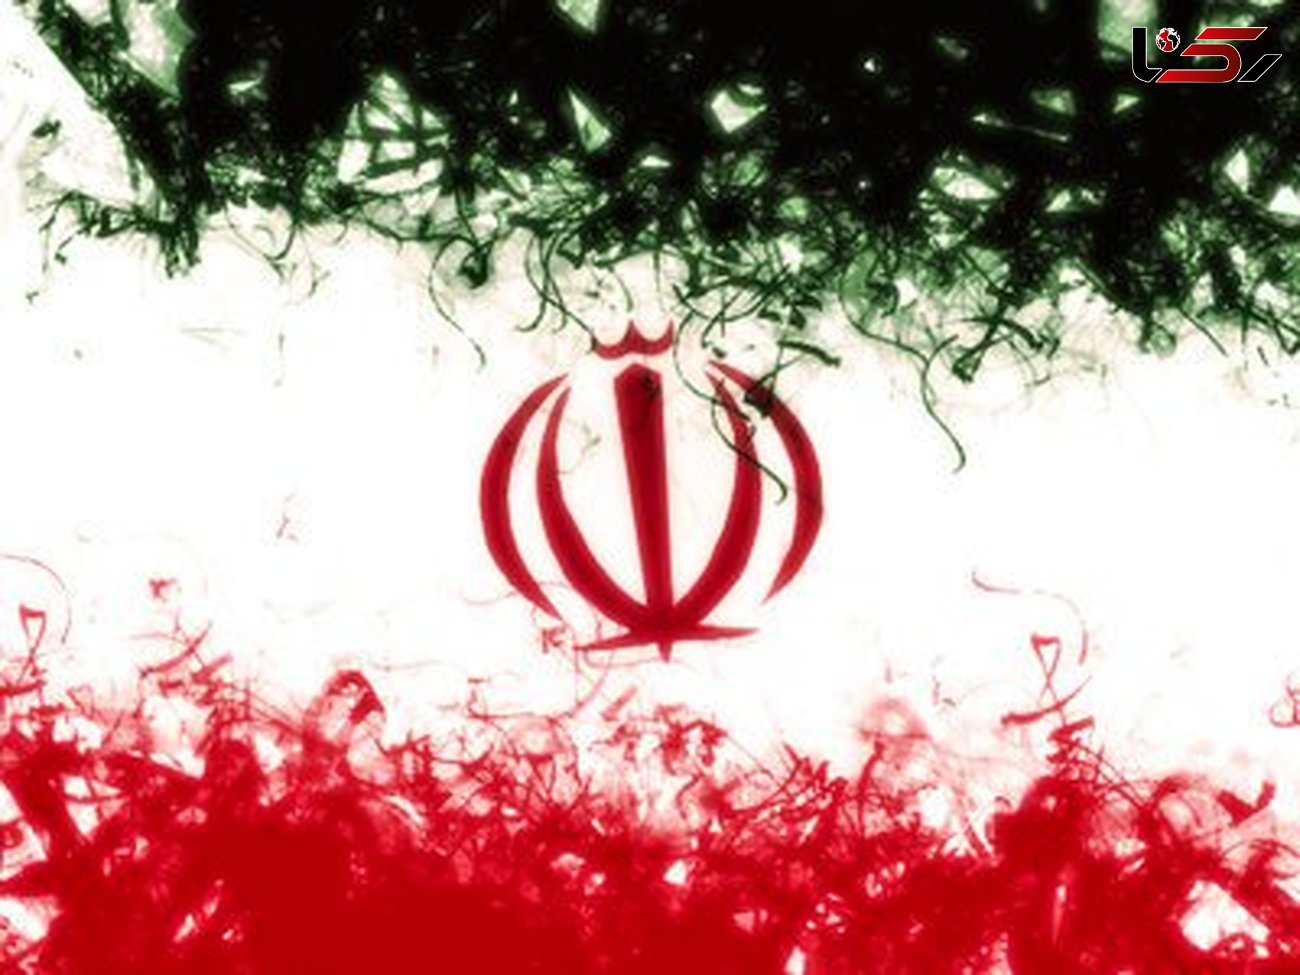 خروج ایران از برجام به معنای امروز در دنیا یعنی اعلان جنگ